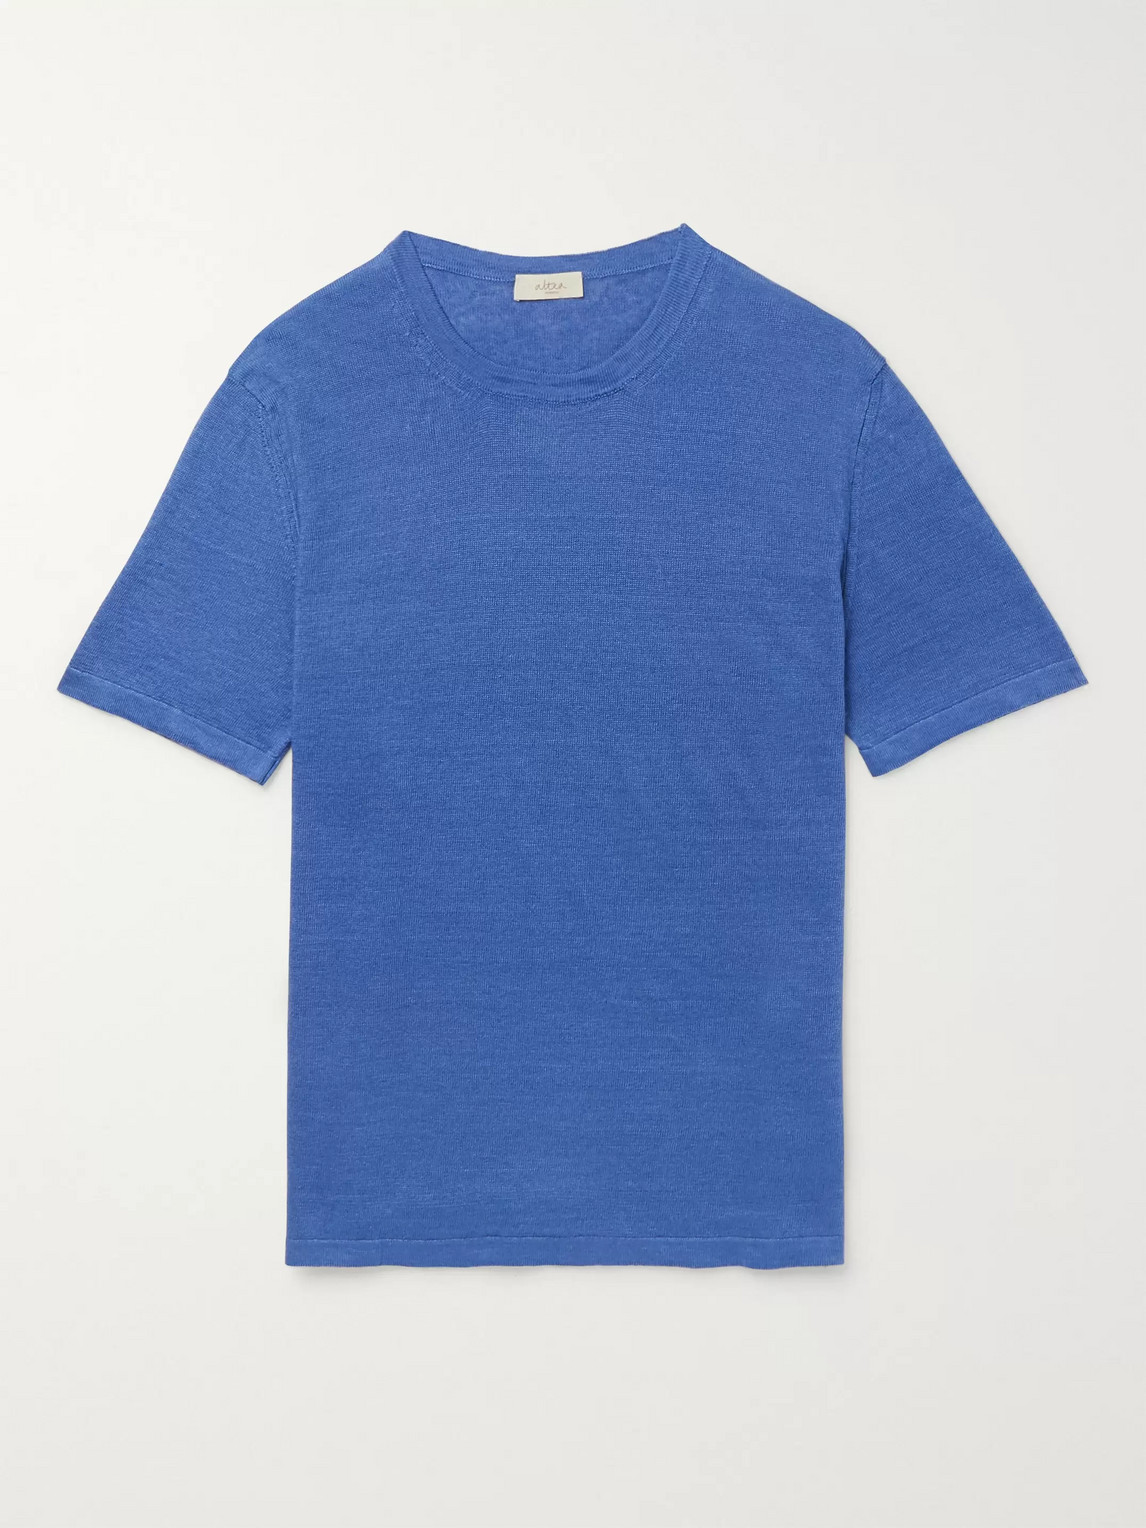 Altea Linen T-shirt In Blue